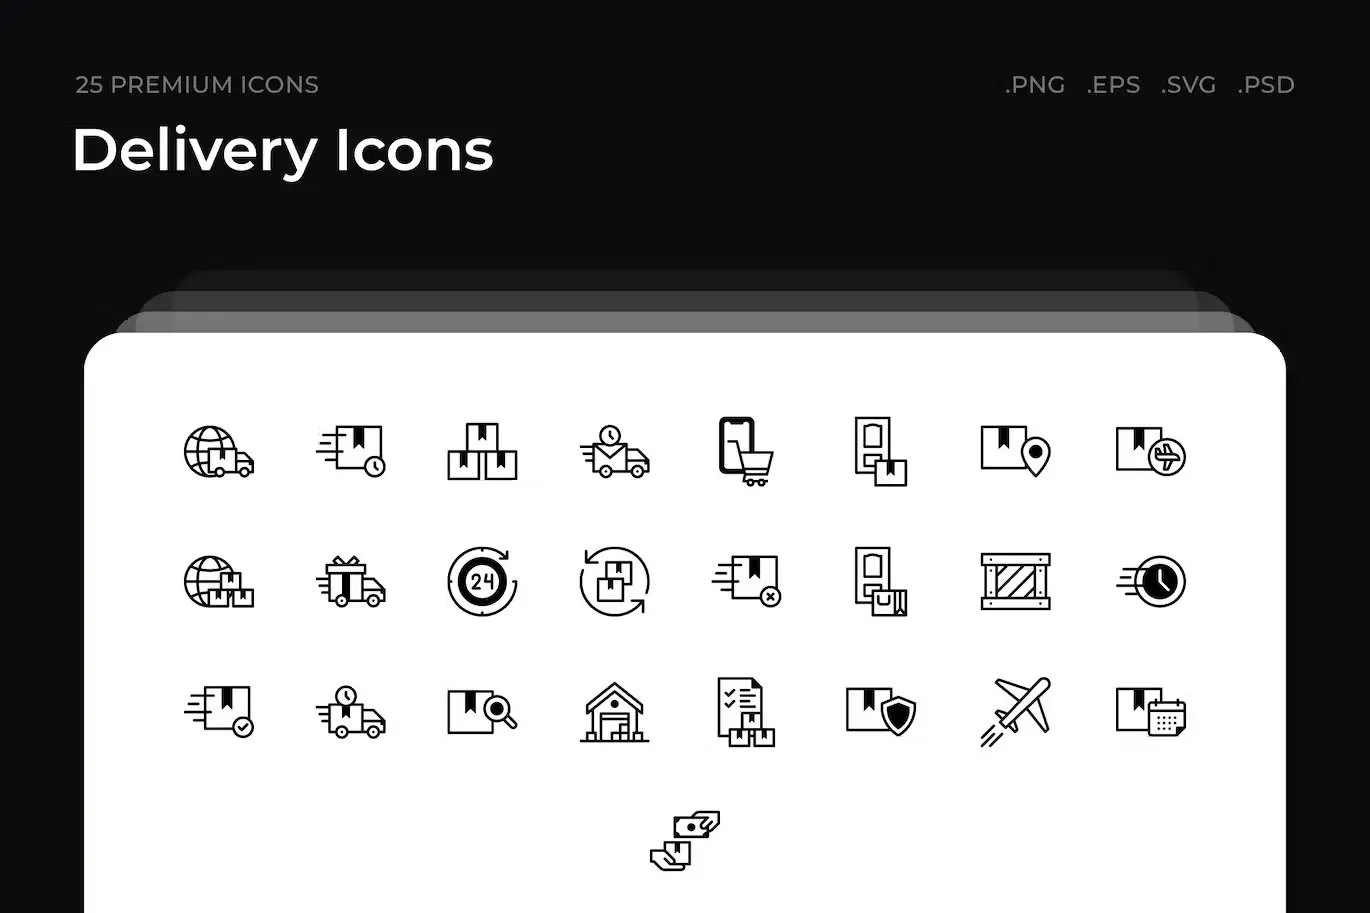 25 Premium Delivery Icons